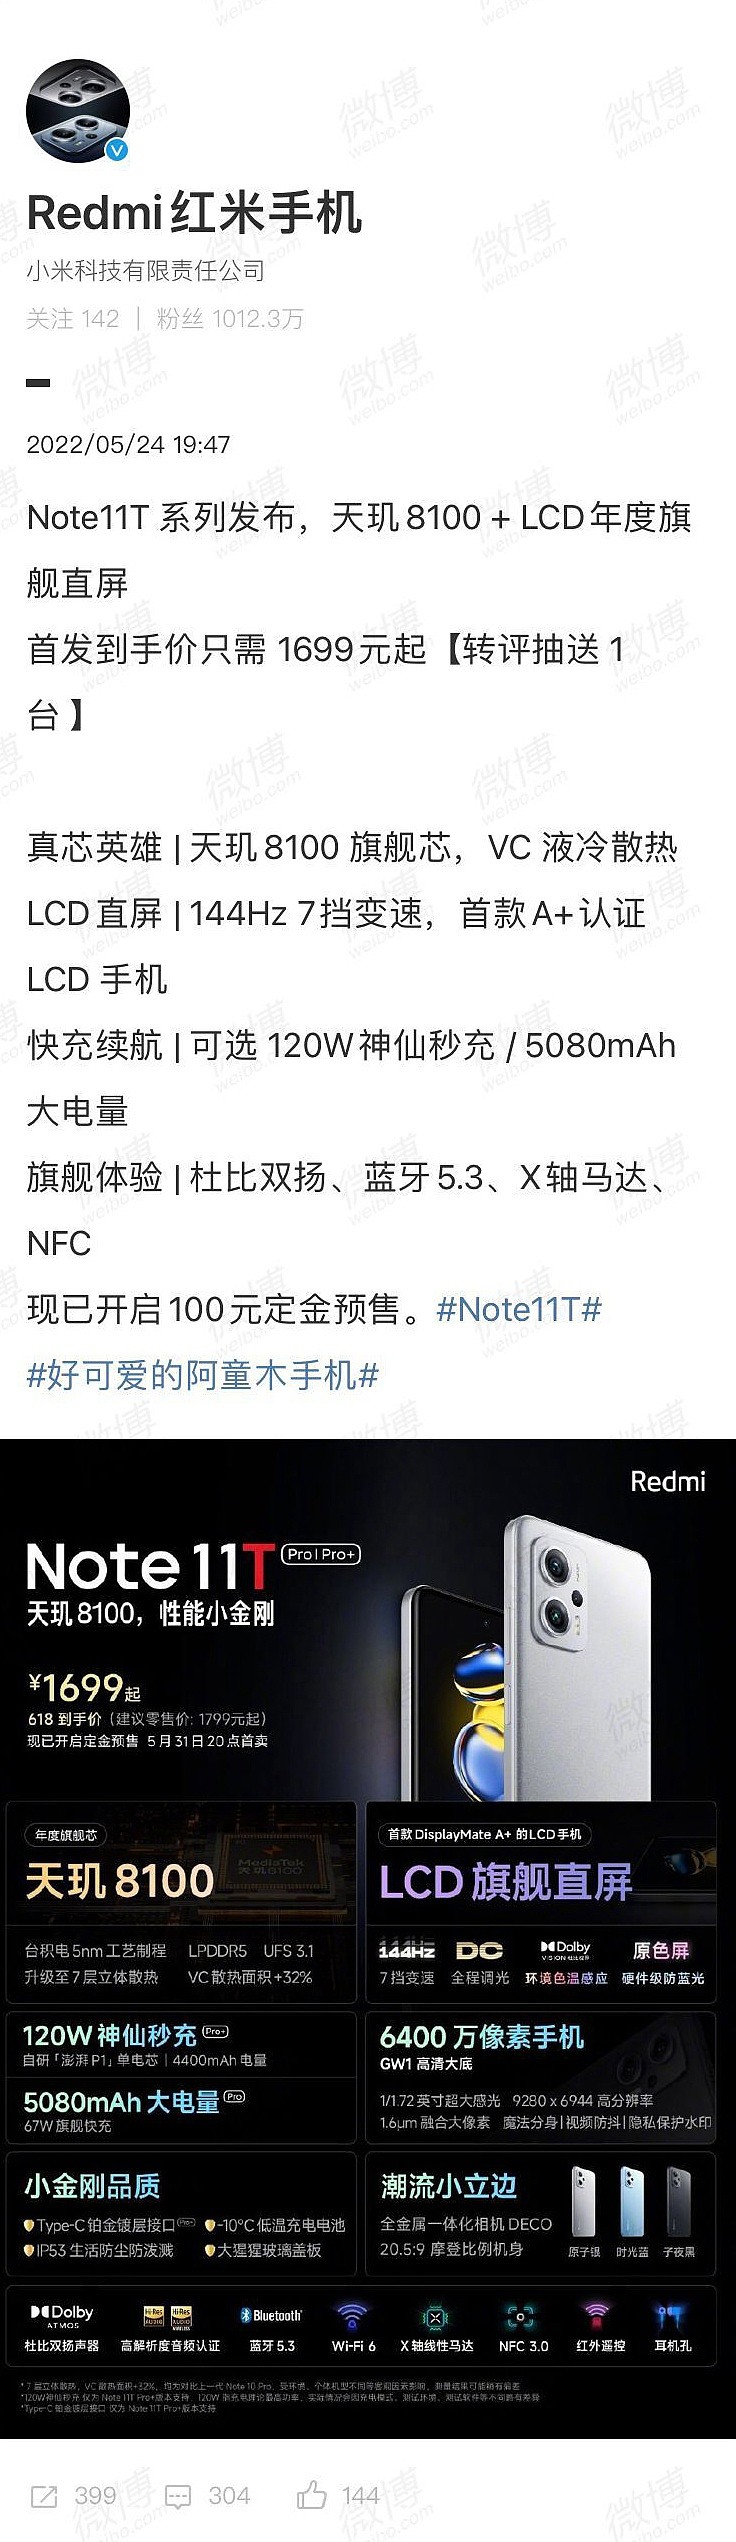 180 天只换不修：Redmi Note11T Pro 系列 1669 元起预售中 - 1